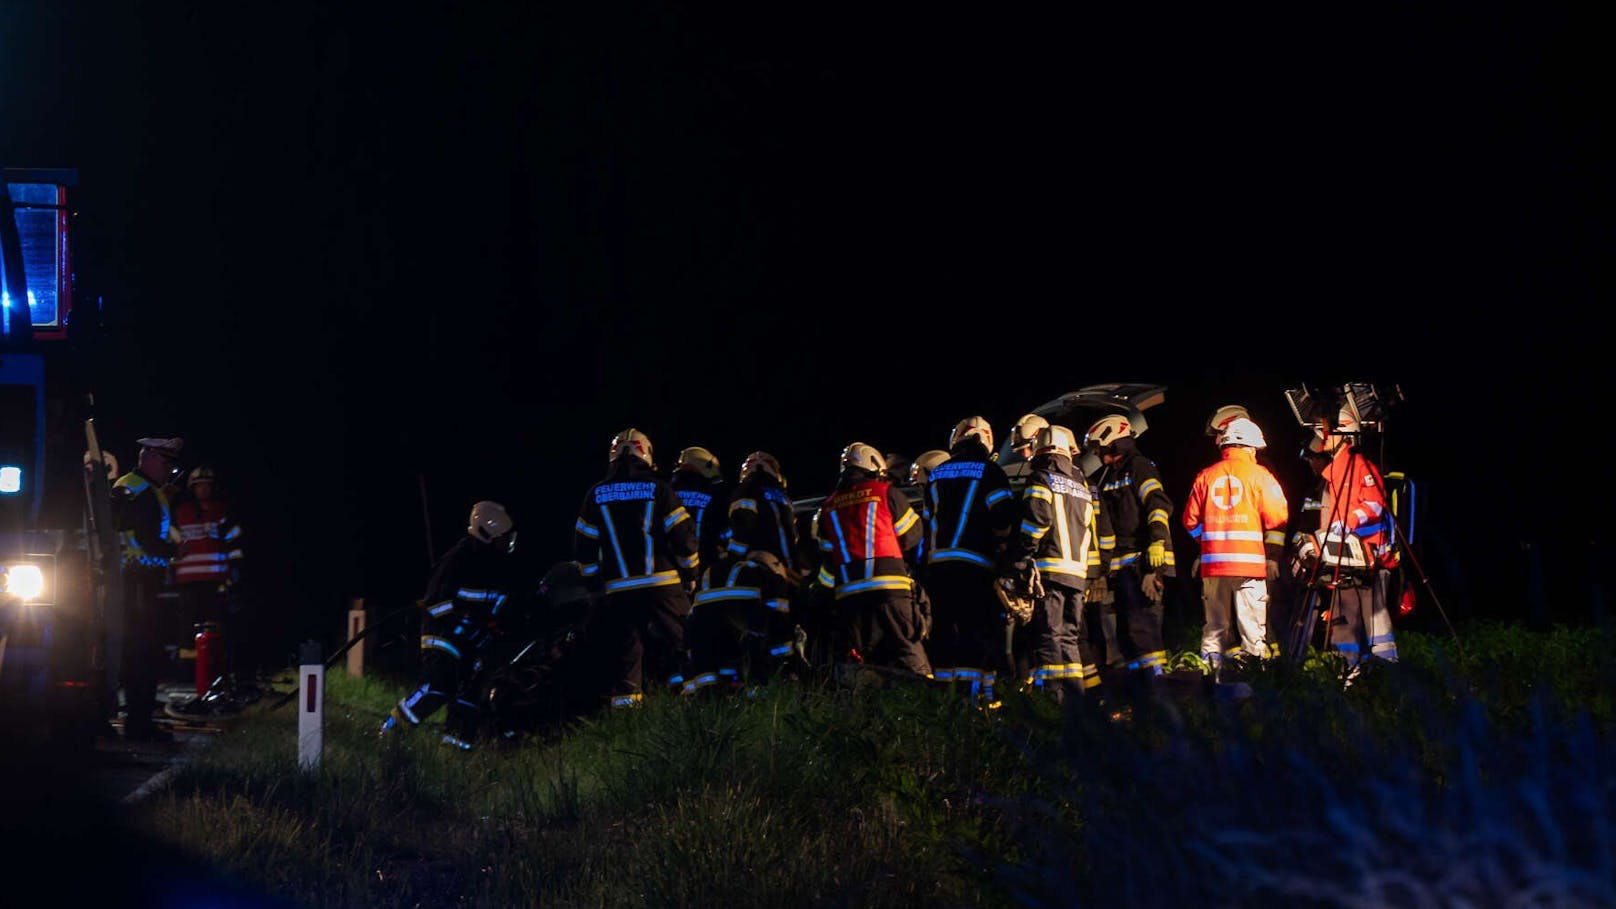 Tragödie am Montagabend in Oberösterreich! Bei einem Frontal-Zusammenstoß in Altenberg bei Linz sind zwei Personen ums Leben gekommen. Für einen 36-Jährigen und eine 16-Jährige kam dabei jede Hilfe zu spät.